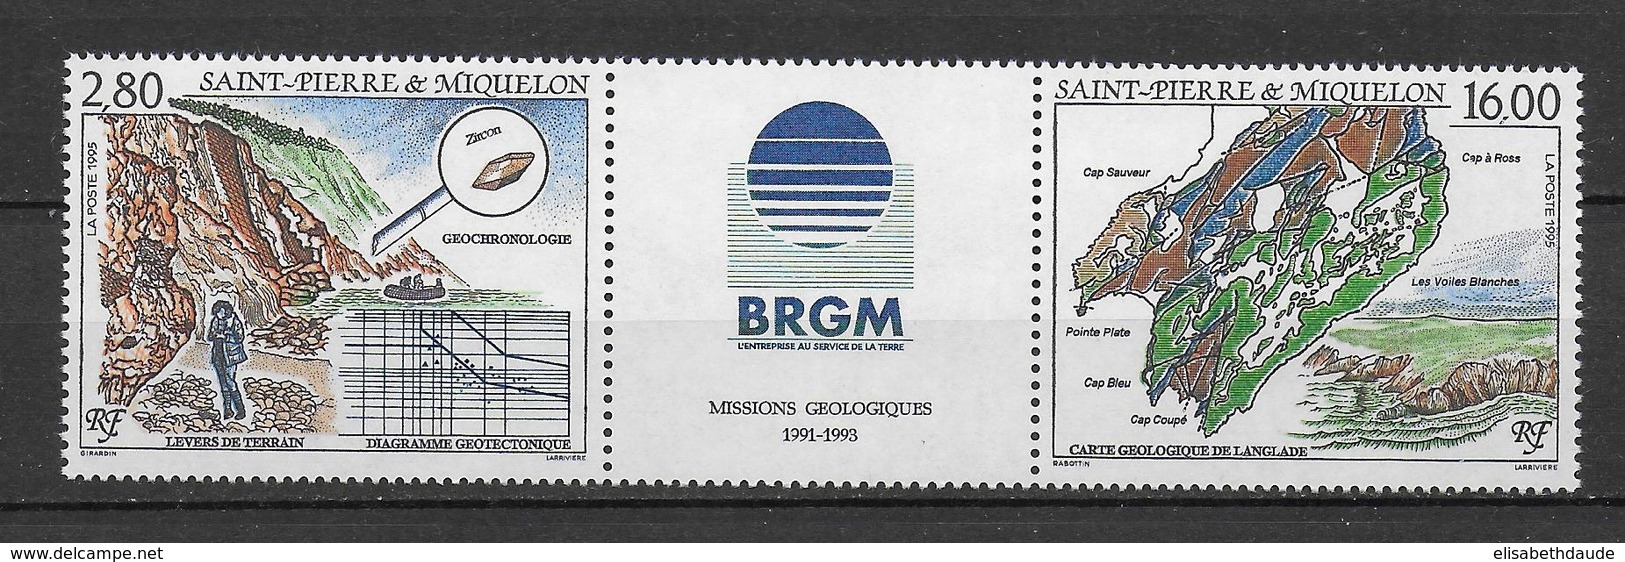 SPM - 1995 - LIVRAISON GRATUITE A PARTIR DE 5 EUR D'ACHAT- NATURE / GEOLOGIE - TRIPTYQUE YVERT N°619A **  MNH - - Unused Stamps